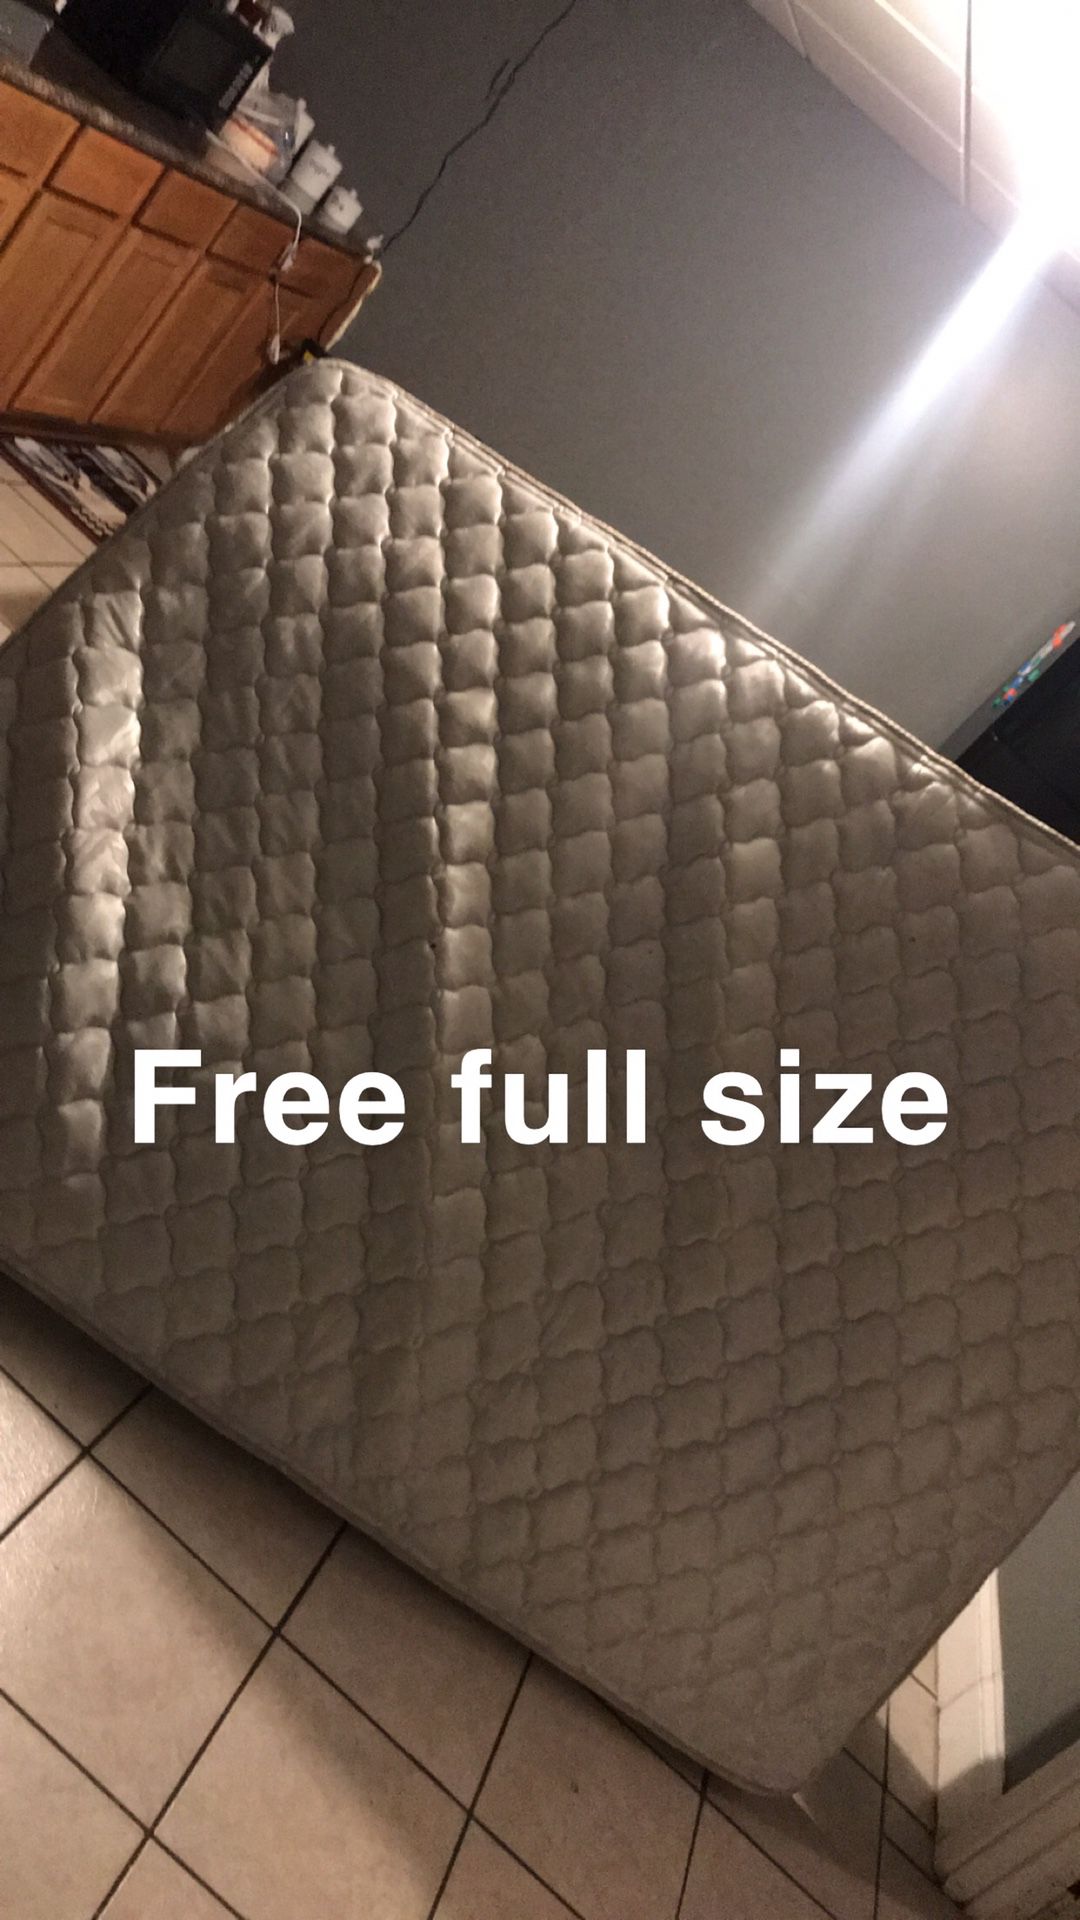 Free full size matress